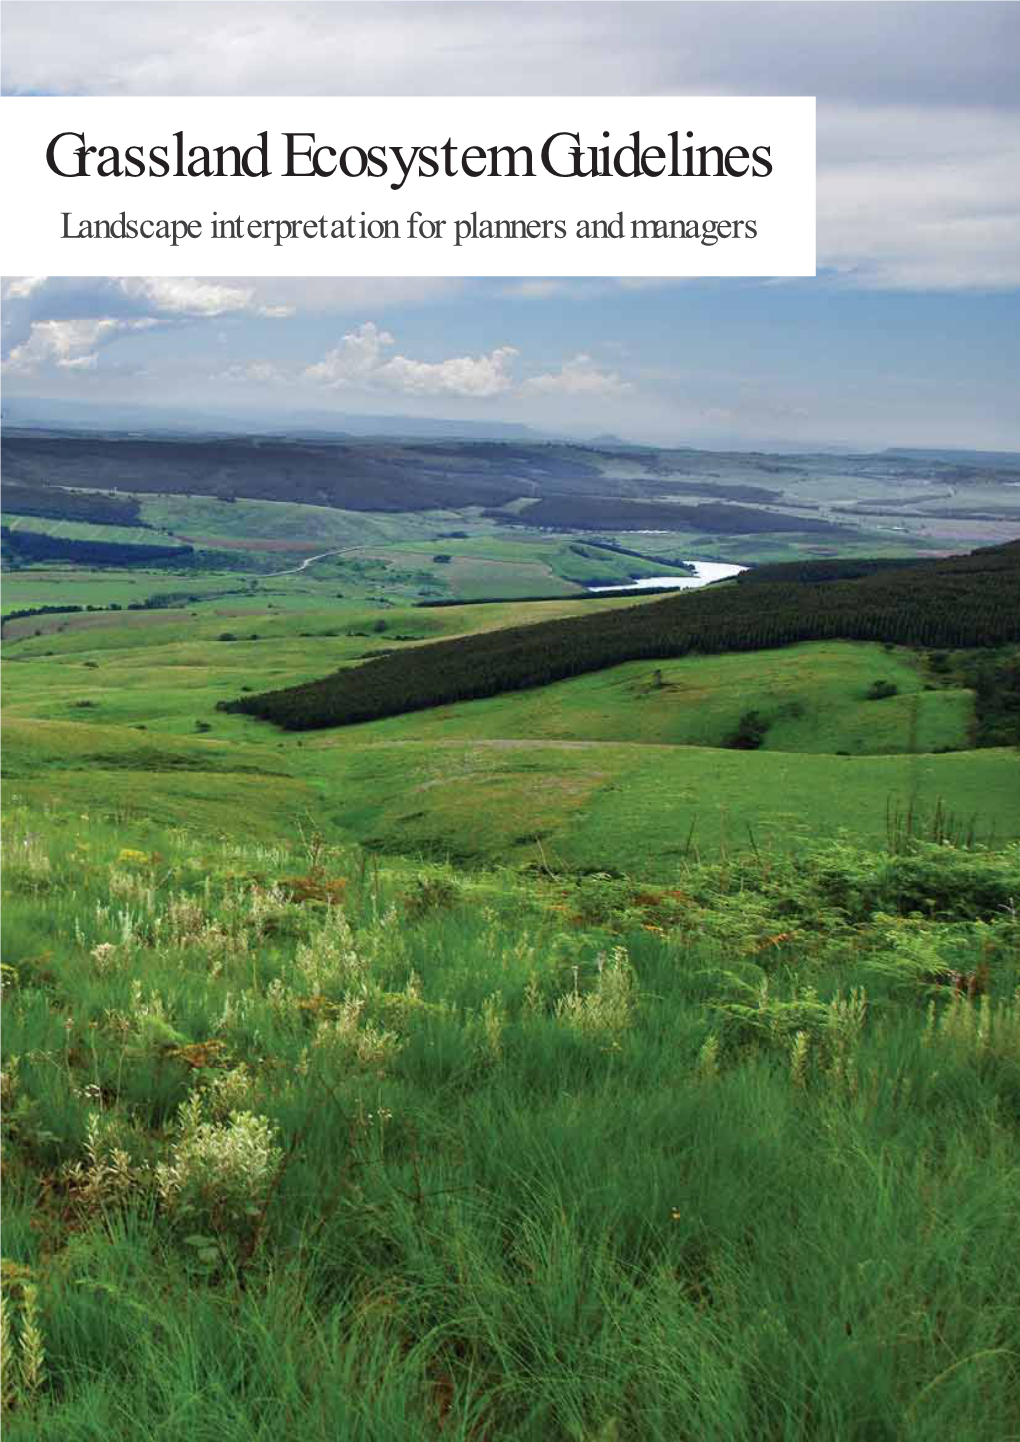 Grassland Ecosystem Guidelines Landscape Interpretation for Planners and Managers Citation: SANBI